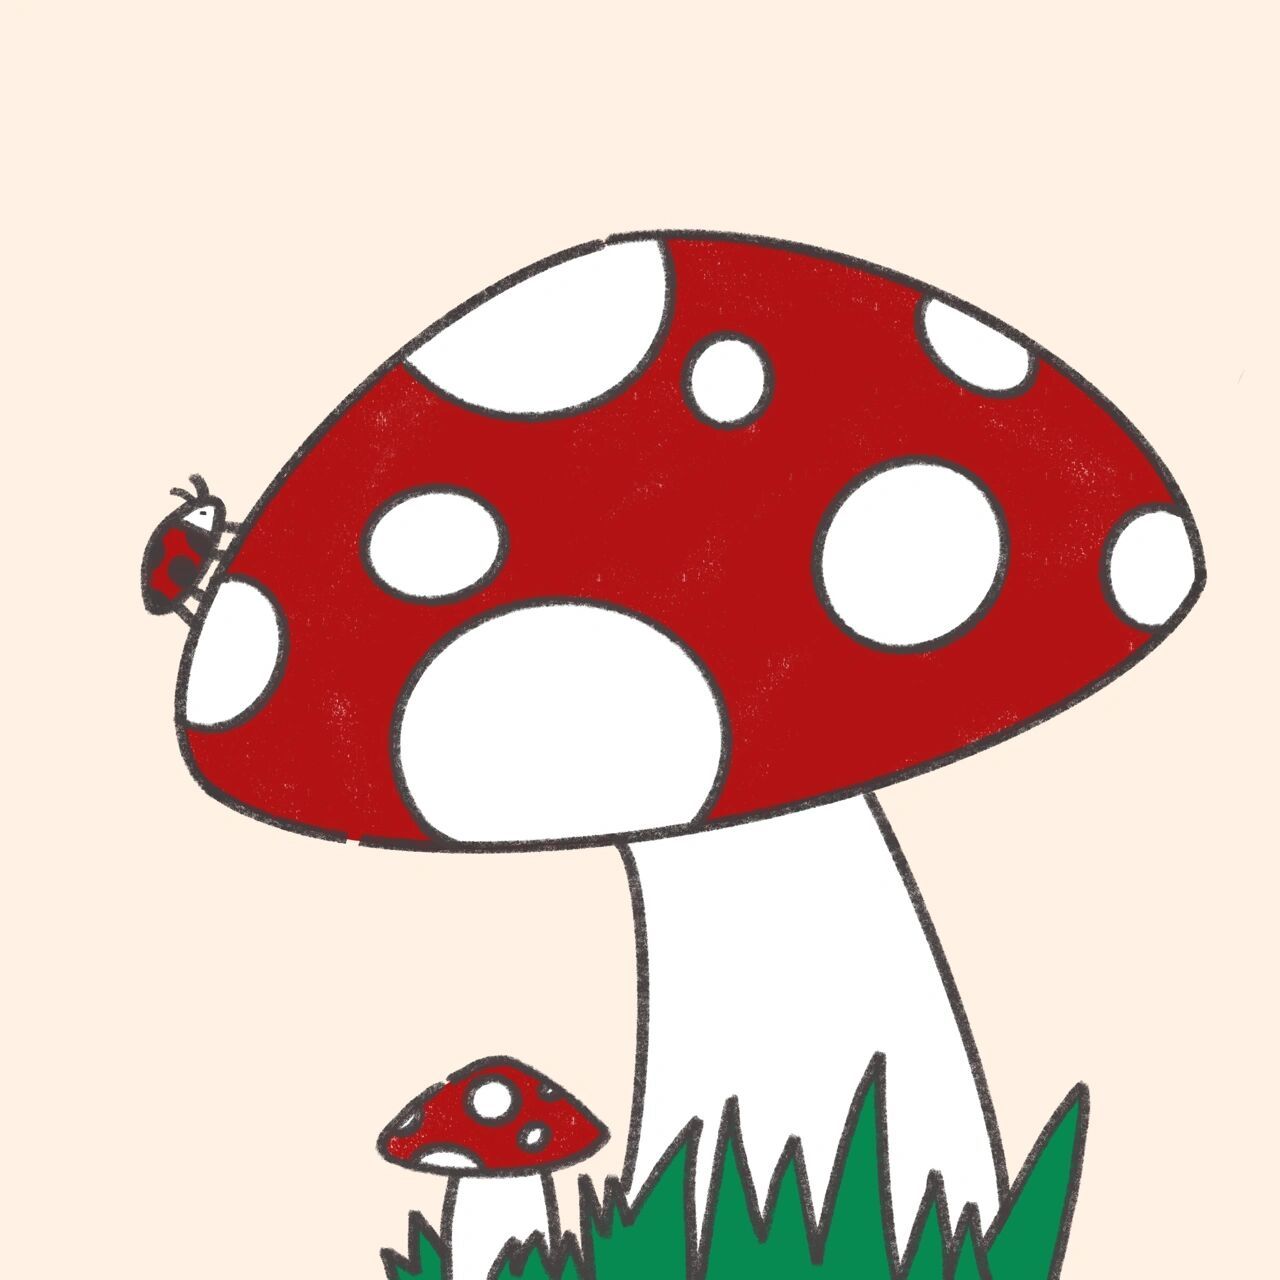 蘑菇简笔画图片彩色图片